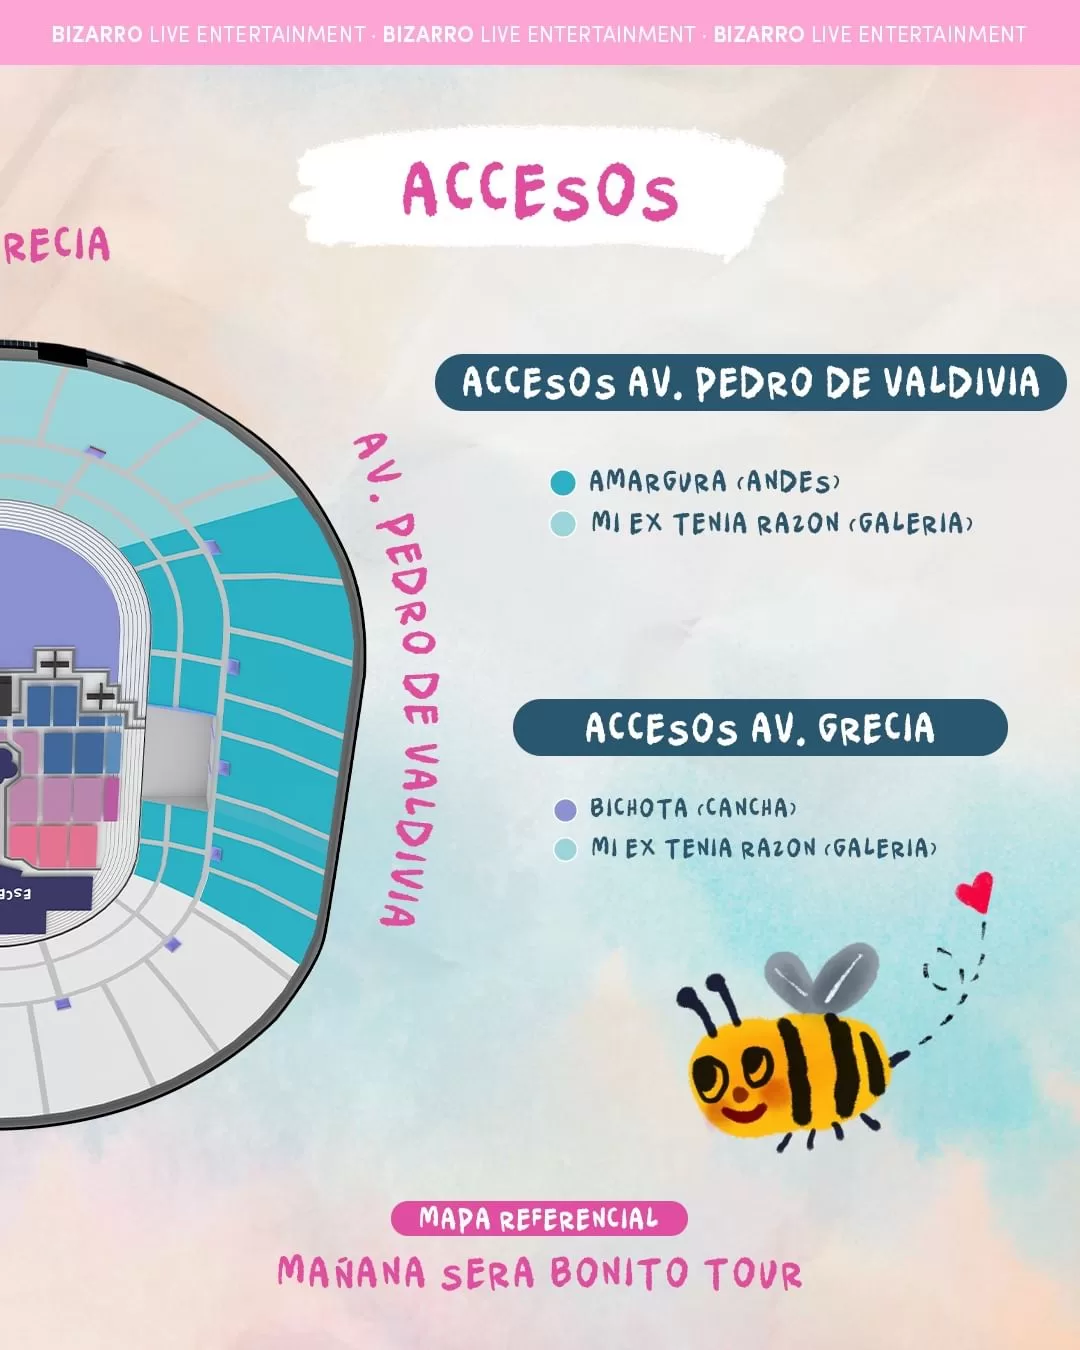 karol g en chile 2024: estos son los cortes de calles y accesos por sus conciertos